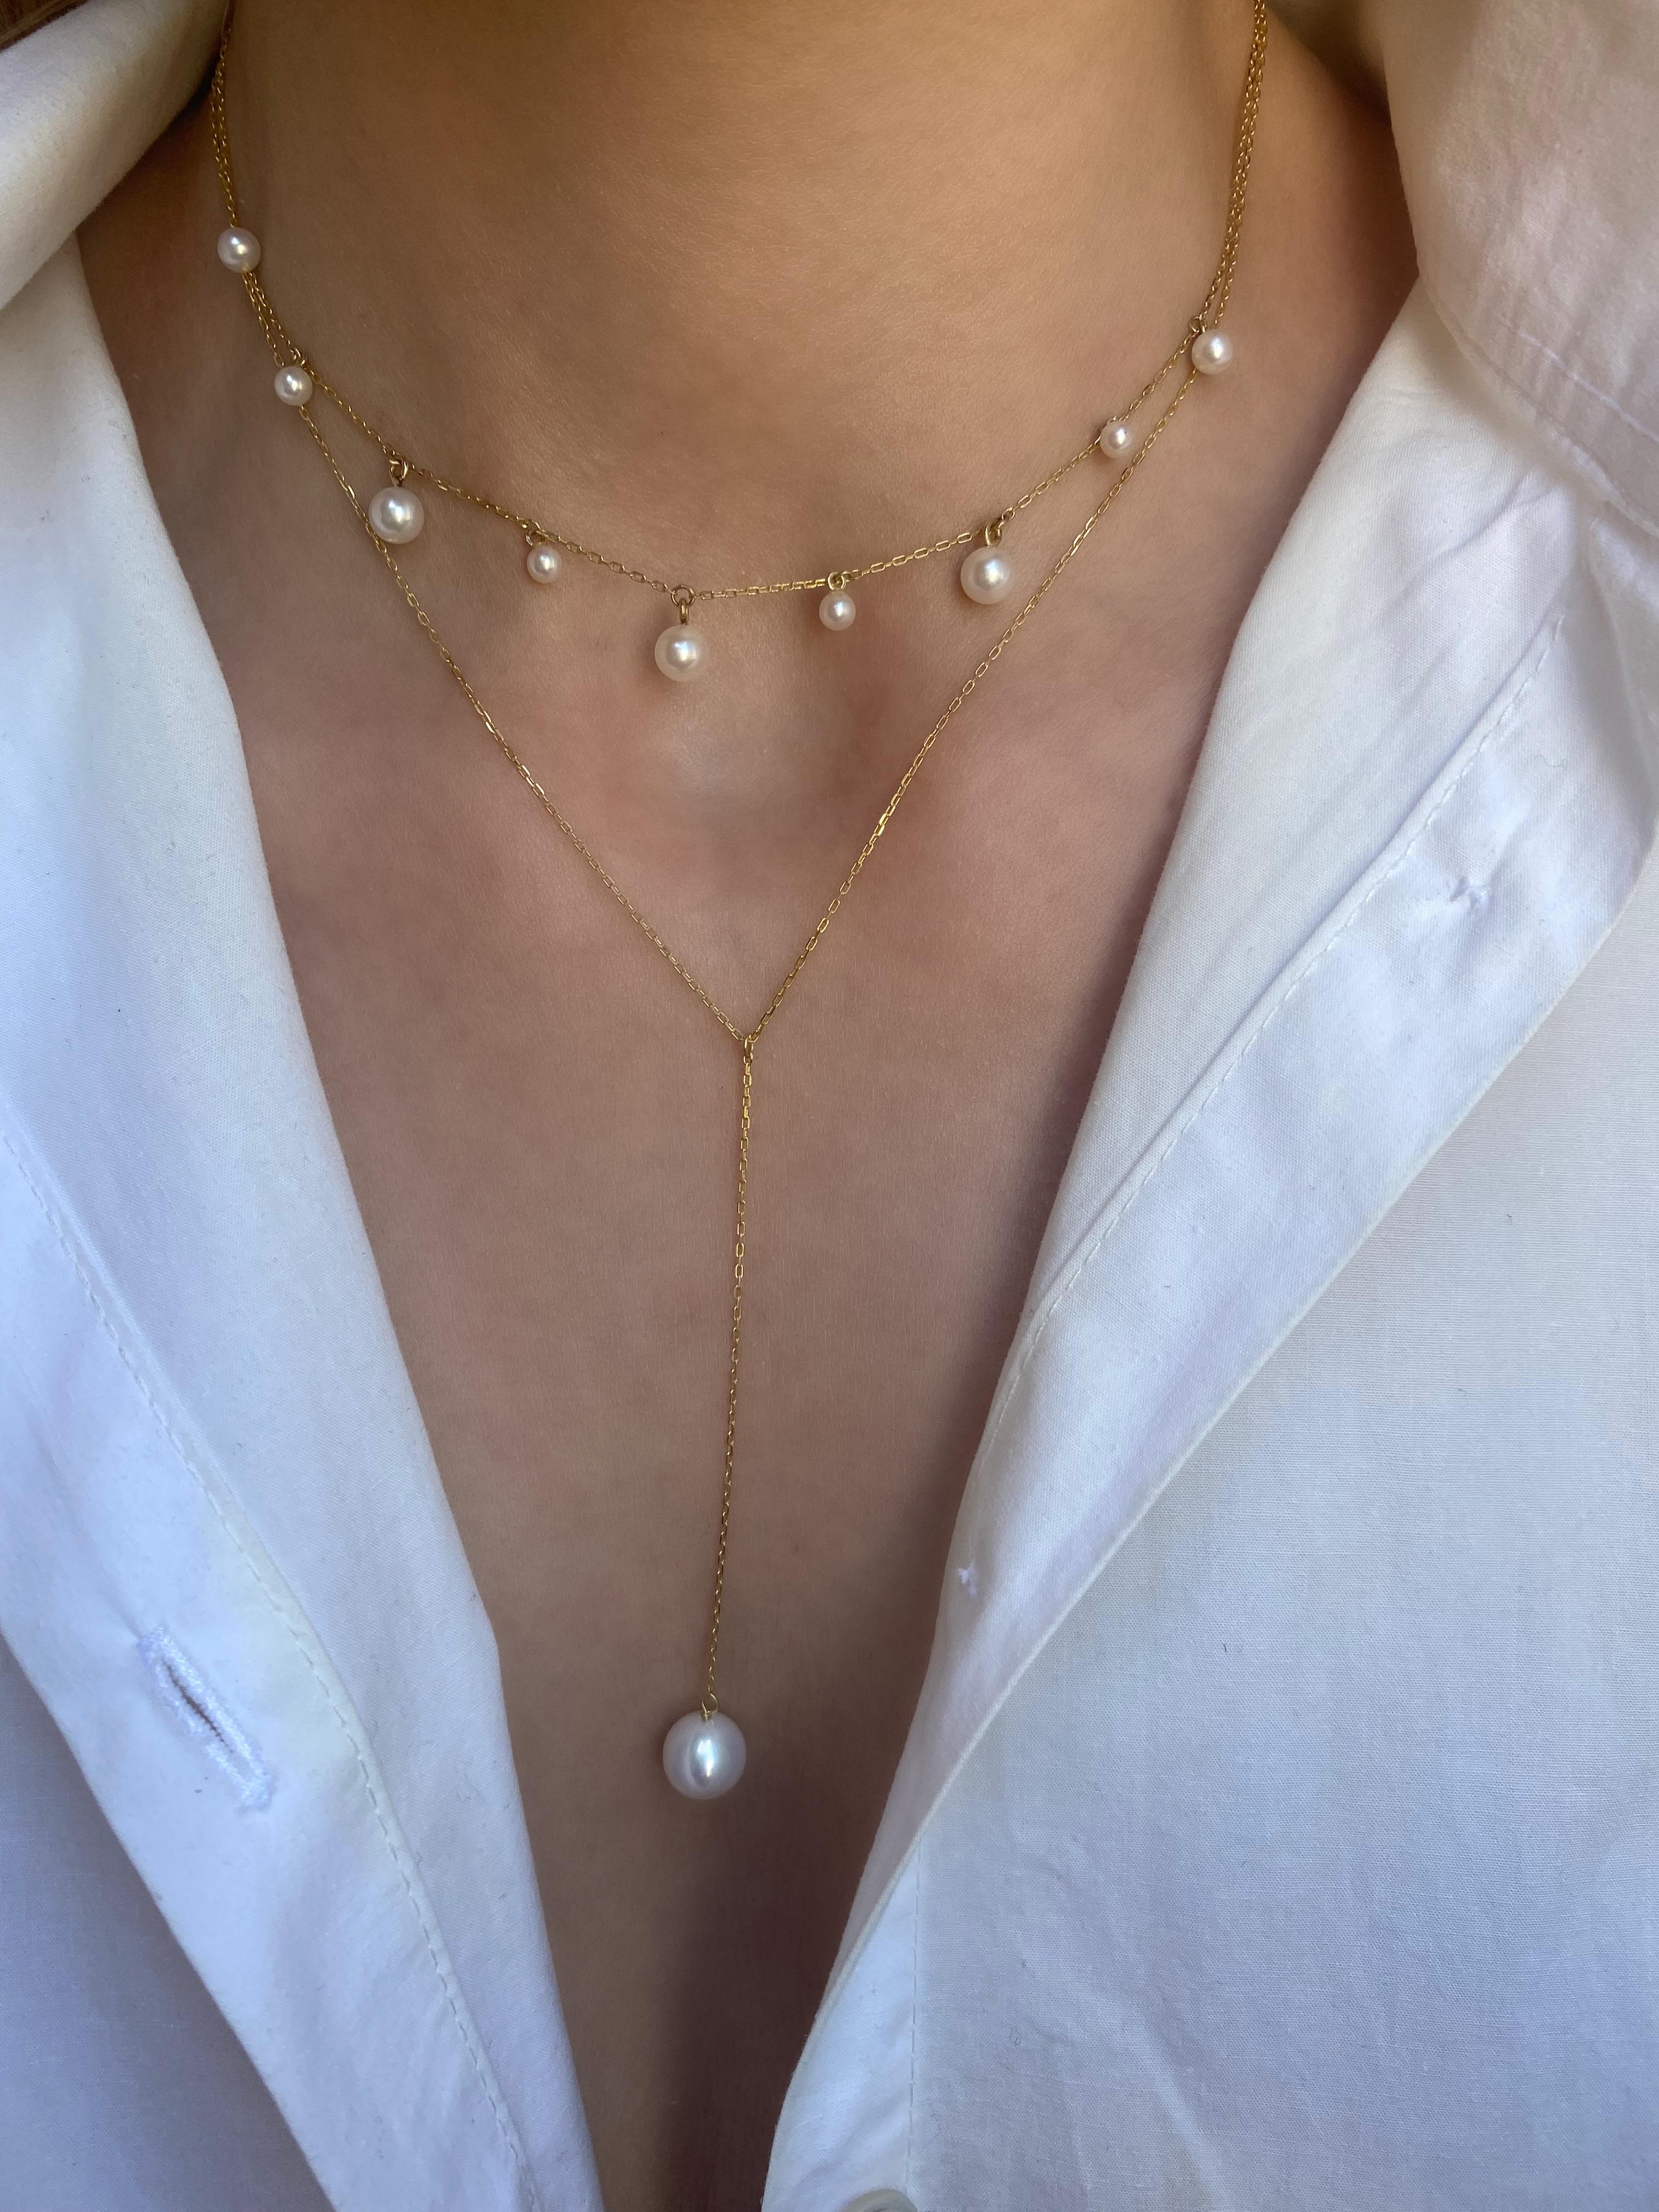 Un ensemble de mini perles pendantes accrochées à une chaîne délicate ajustée autour du cou. Un collier ras du cou moderne qui ajoute une touche d'espièglerie à tous les looks.
Or jaune 18 carats
Perles d'eau douce, 3mm - 5mm
La longueur du tour de